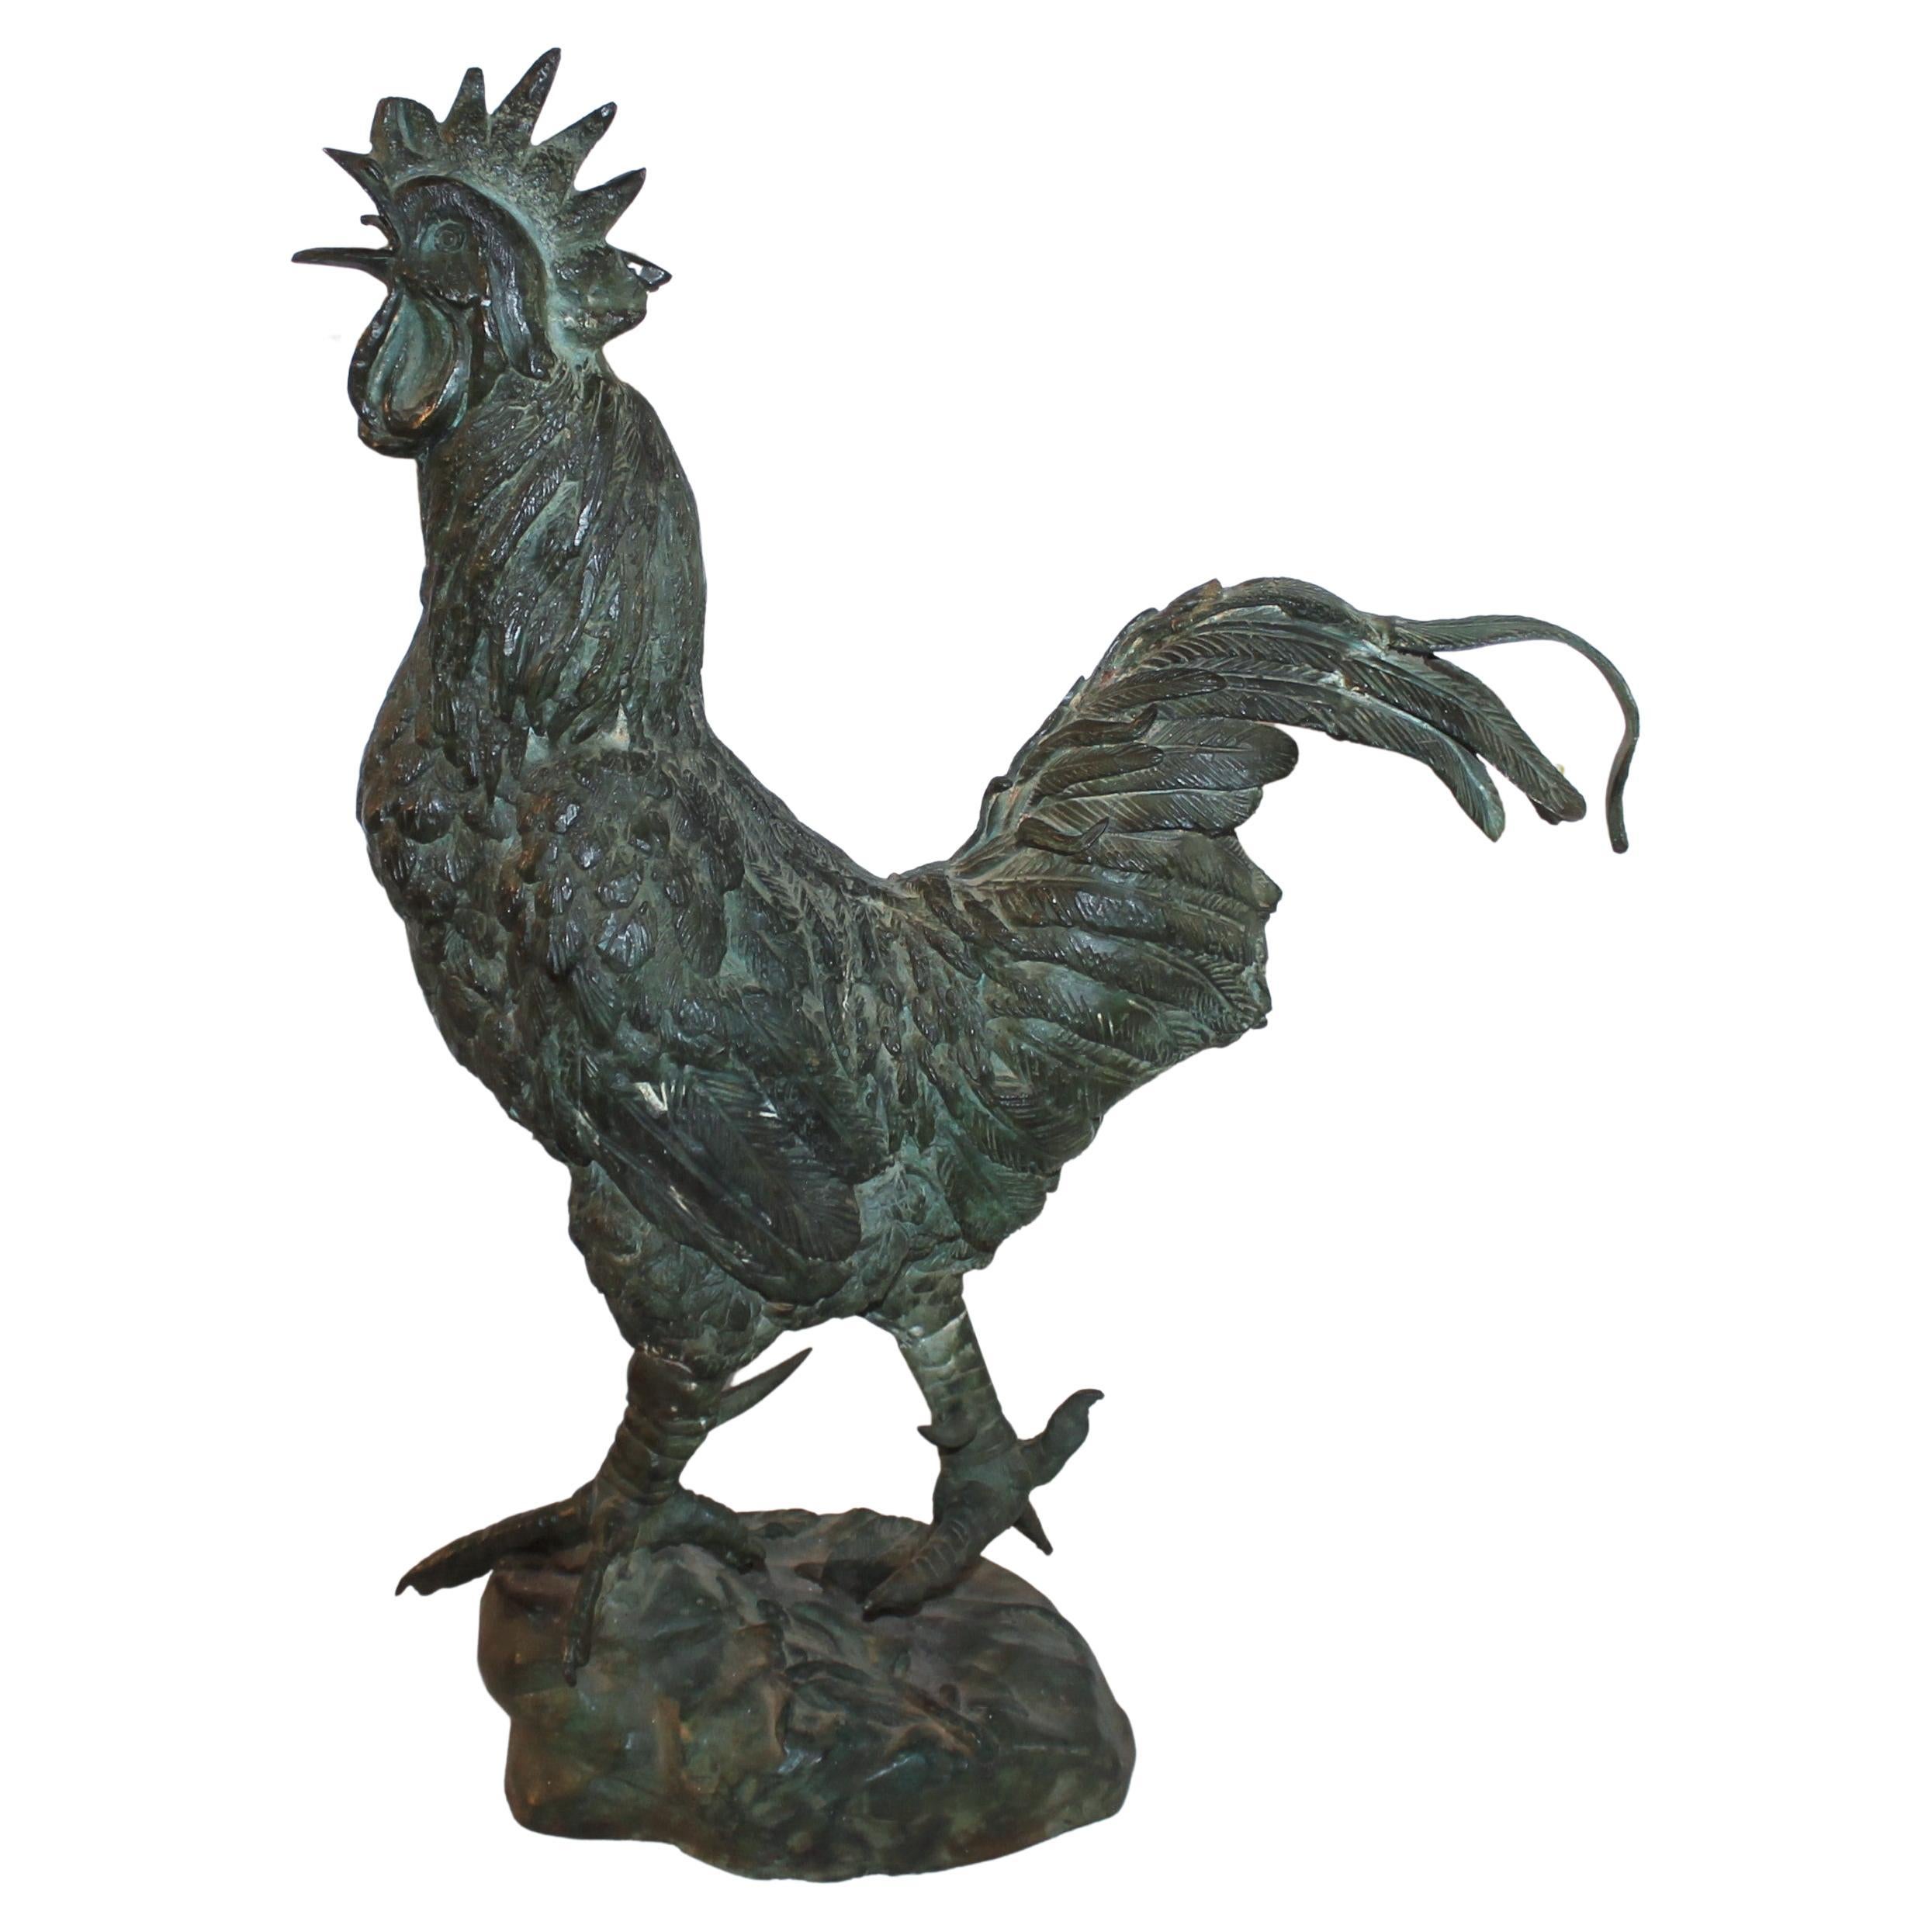 Bronzeskulptur eines Hahns aus dem frühen 20. Jahrhundert